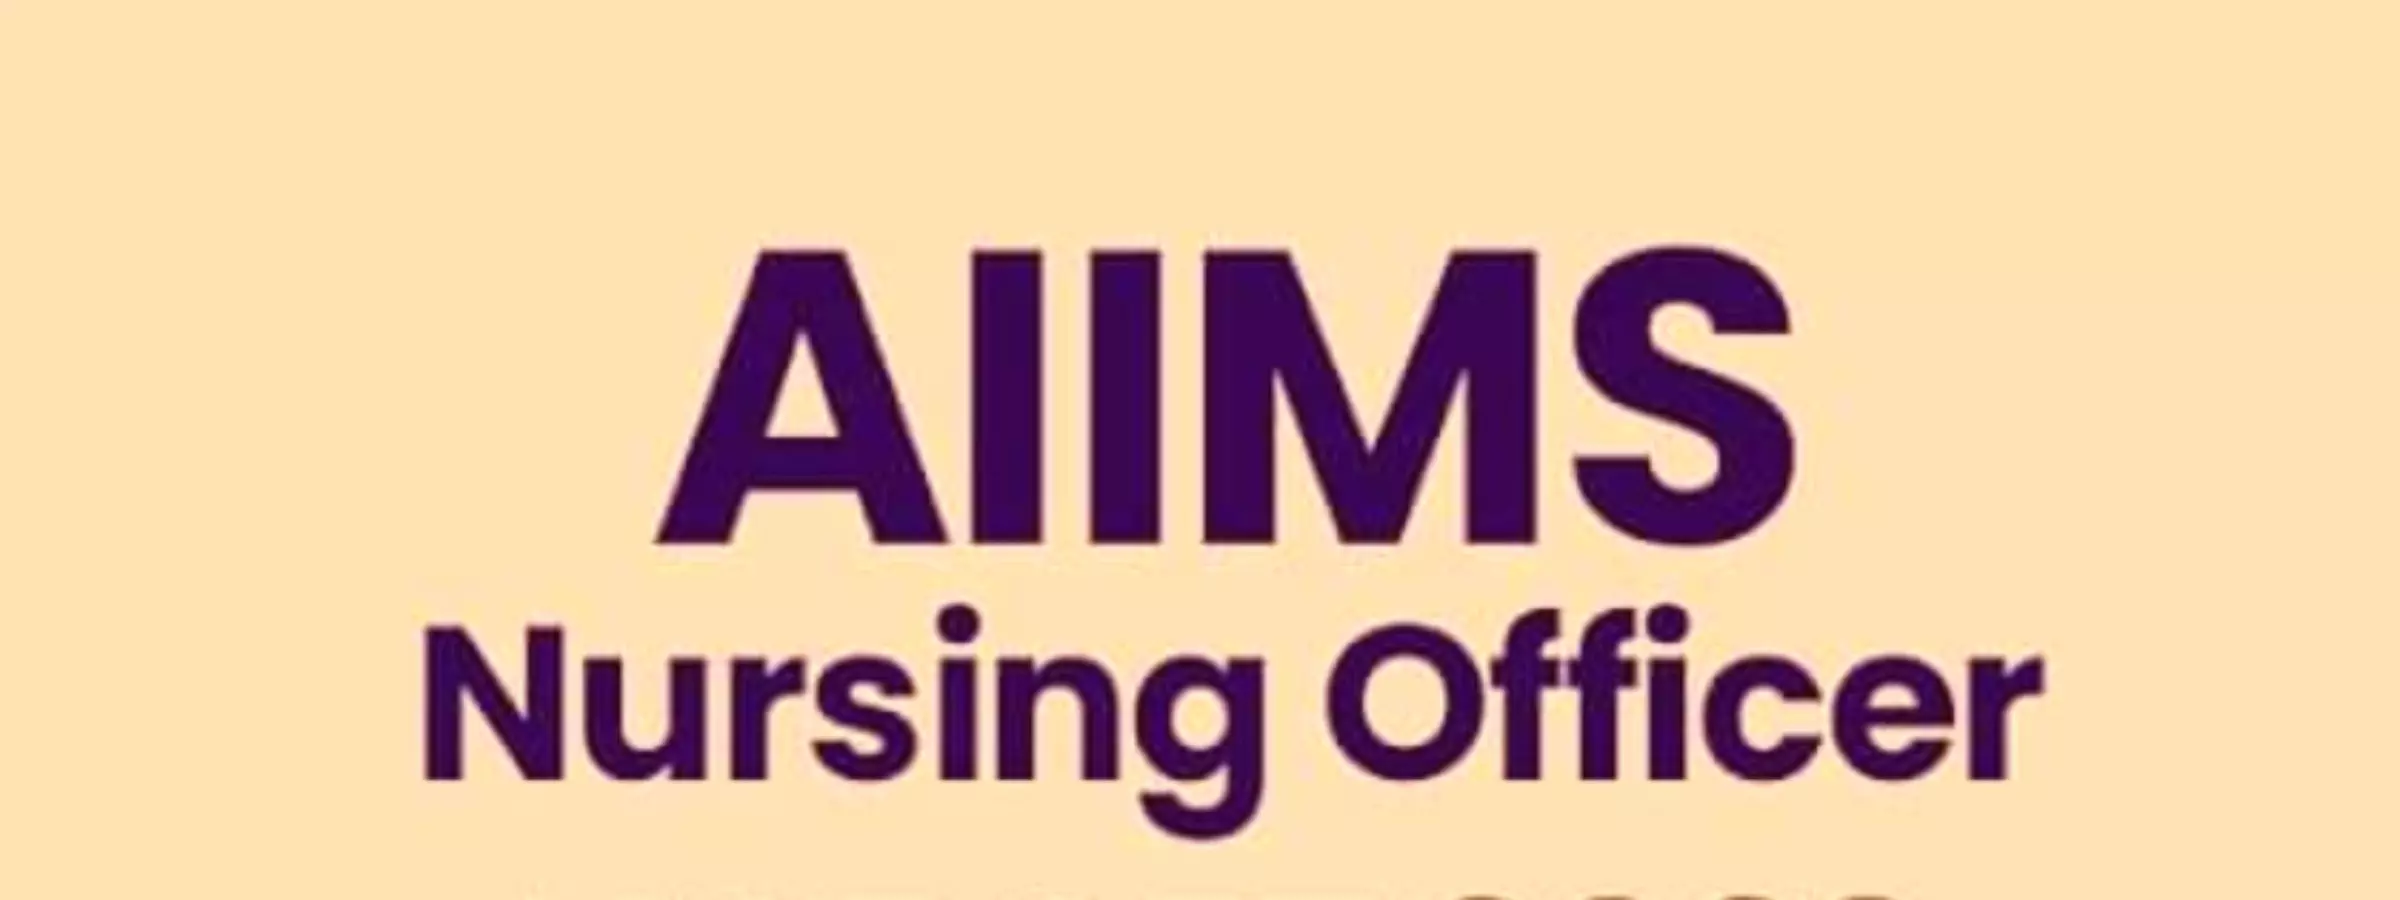 AIIMS BHARTI: देश भर के 15 AIIMS में होंगी नर्सिंग ऑफिसर की भर्तियां, देखिये भर्ती से जुड़ी पूरी डिटेल